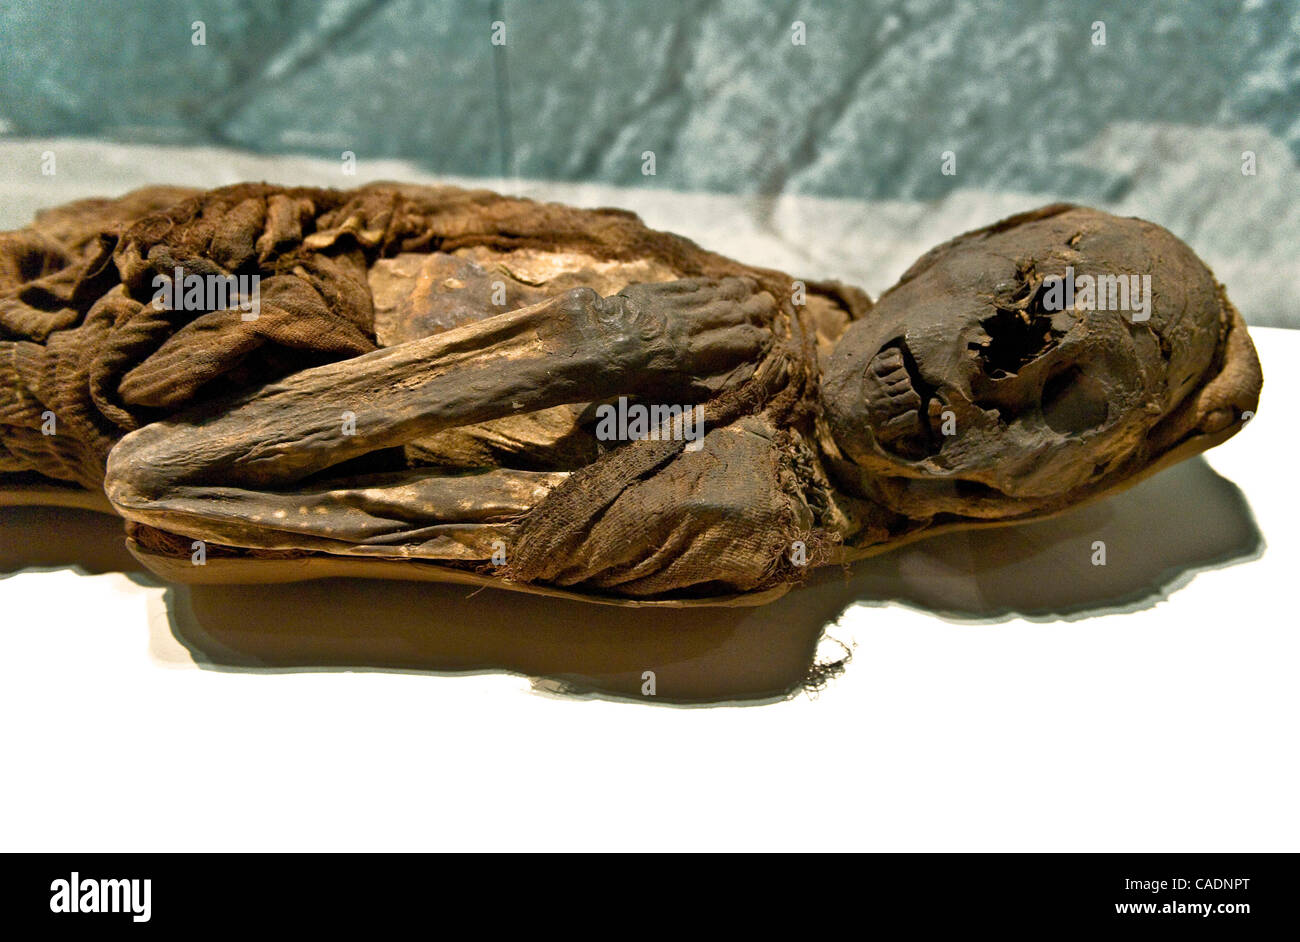 30 juin 2010 - Los Angeles, Californie, USA - La momie d'un homme, environ 30 ans au moment de sa mort quelque 1 000 ans, à l'affiche au jour de l'aperçu de la presse "Les momies de la pièce au California Science Center. Grâce aux dons de momies et de l'artif Banque D'Images